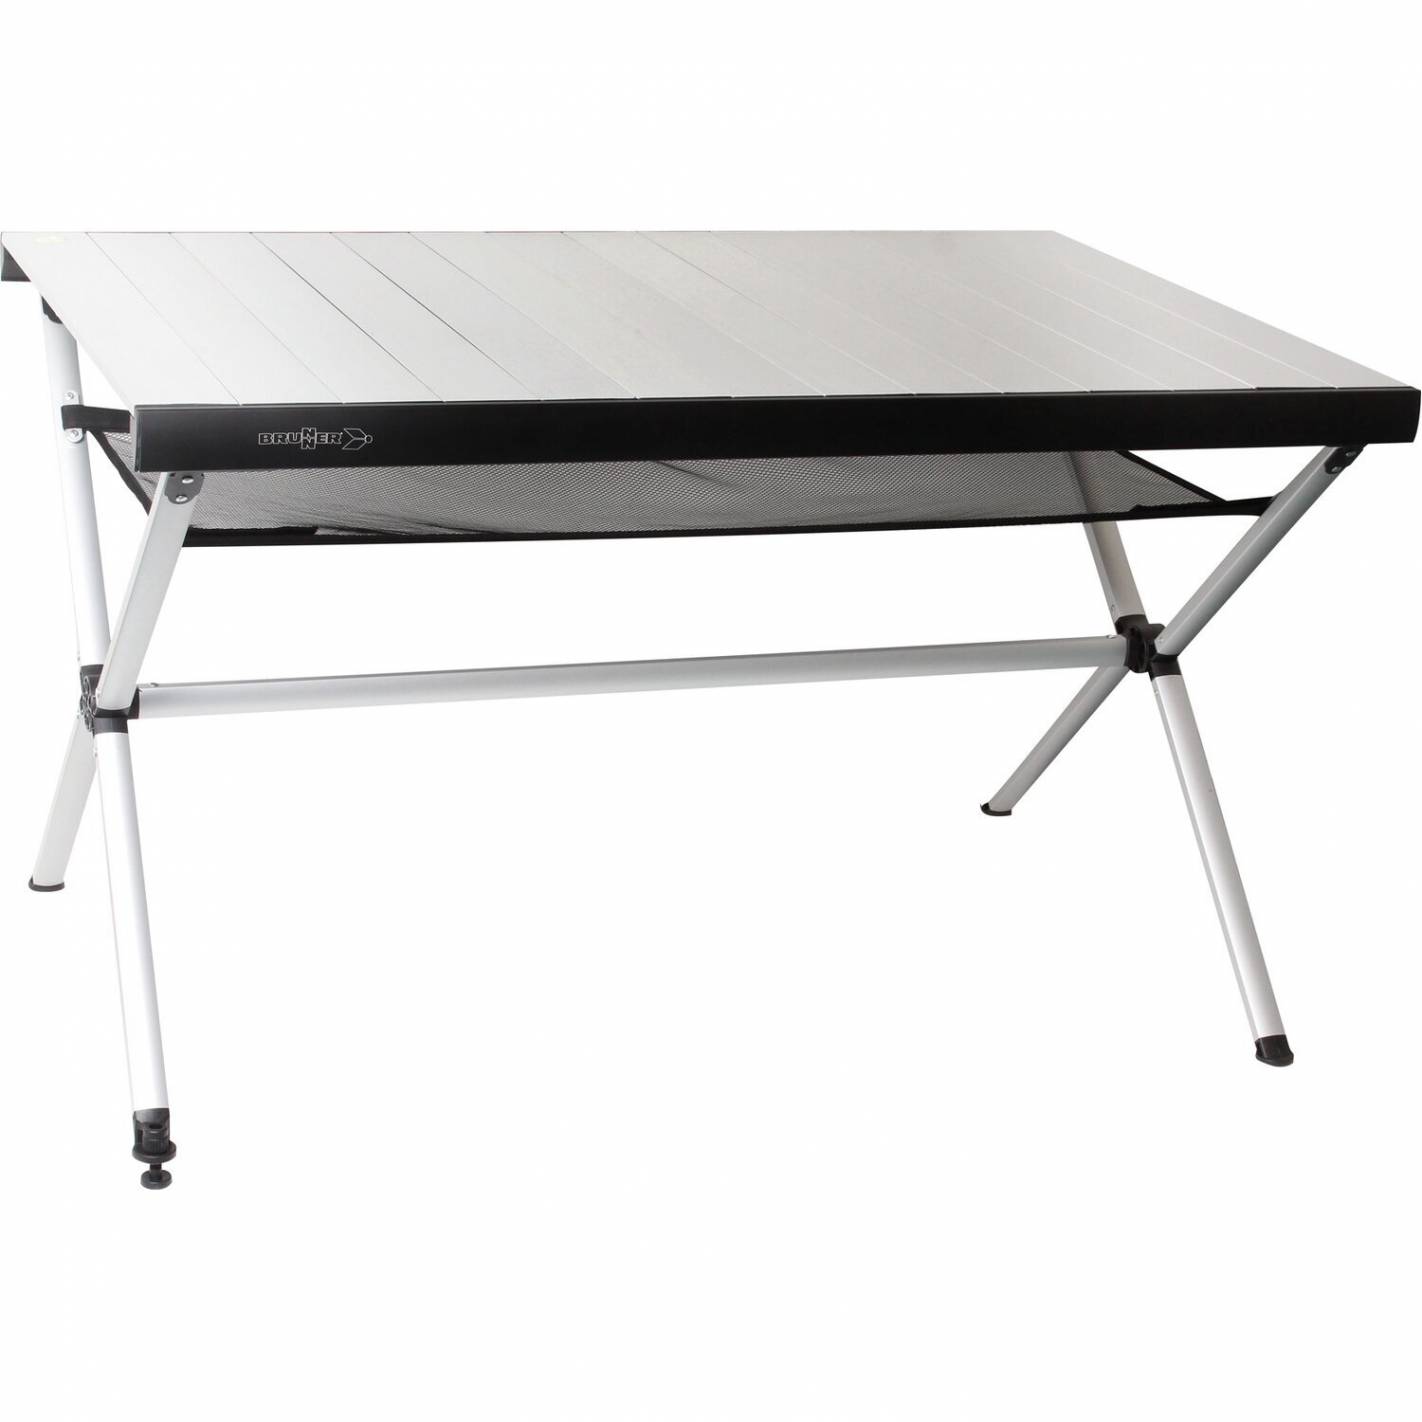 Table pliante Portable en Aluminium, bureau de Camping, ultraléger